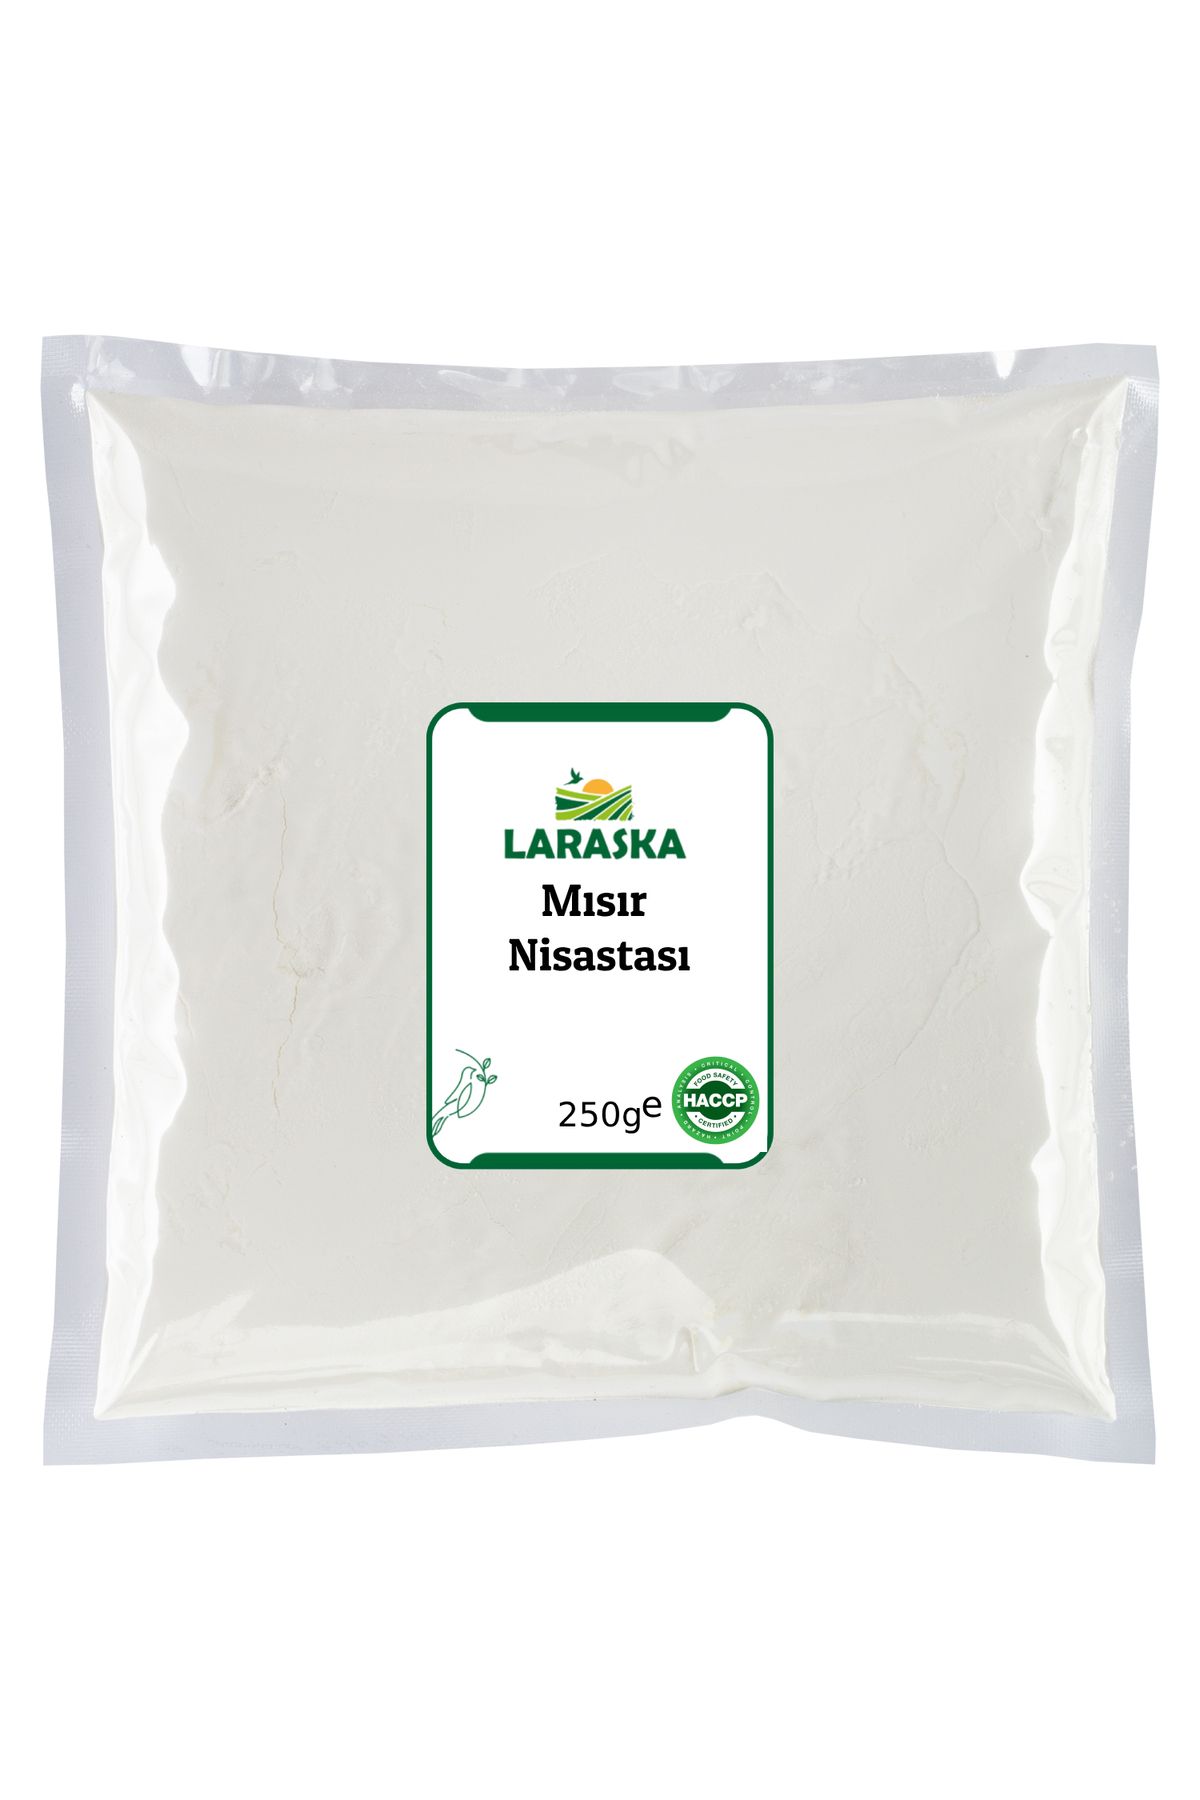 Laraska Mısır Nişastası 250g - Corn Starch 250g